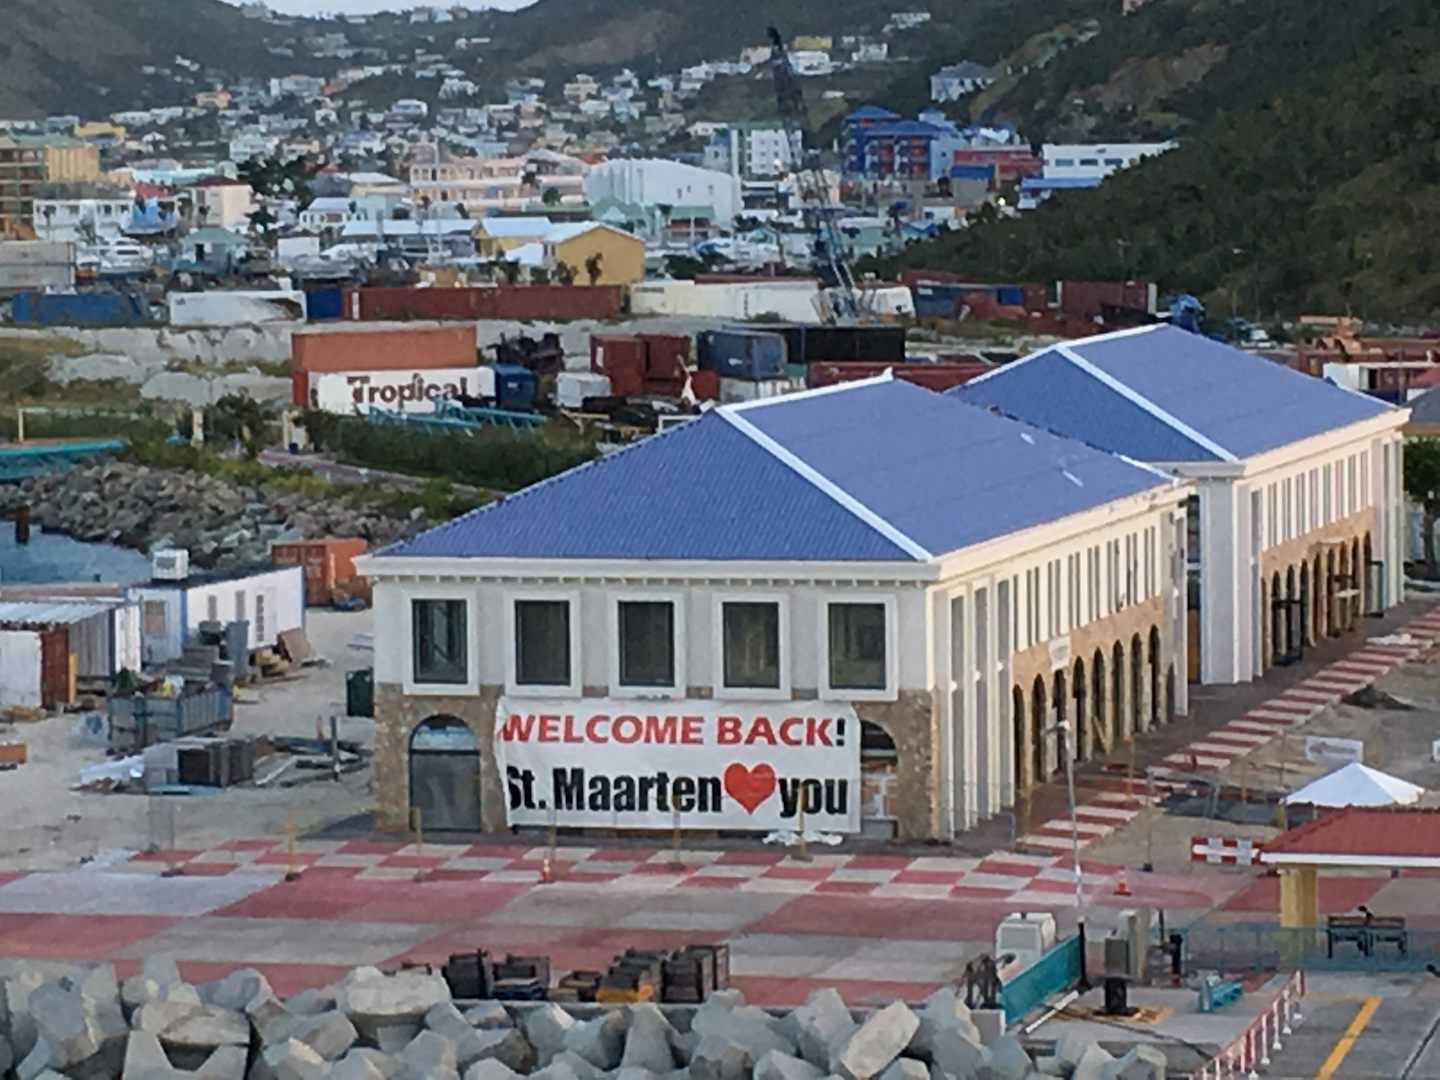 St Maarten port after storms hit